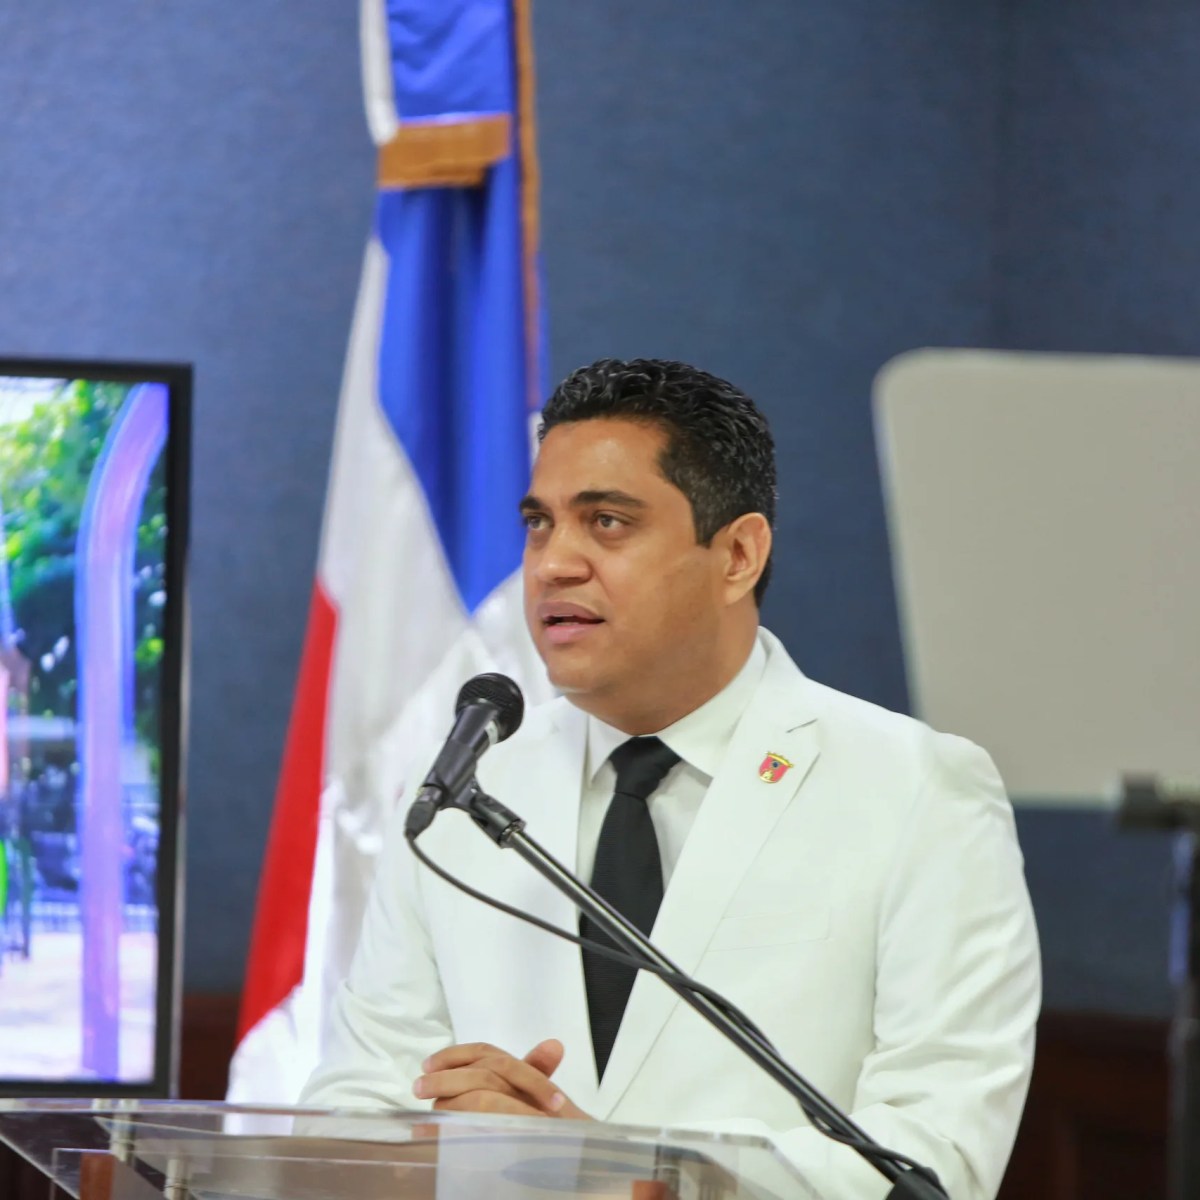 Alcalde y regidores toman juramento en La Vega –  (República Dominicana)